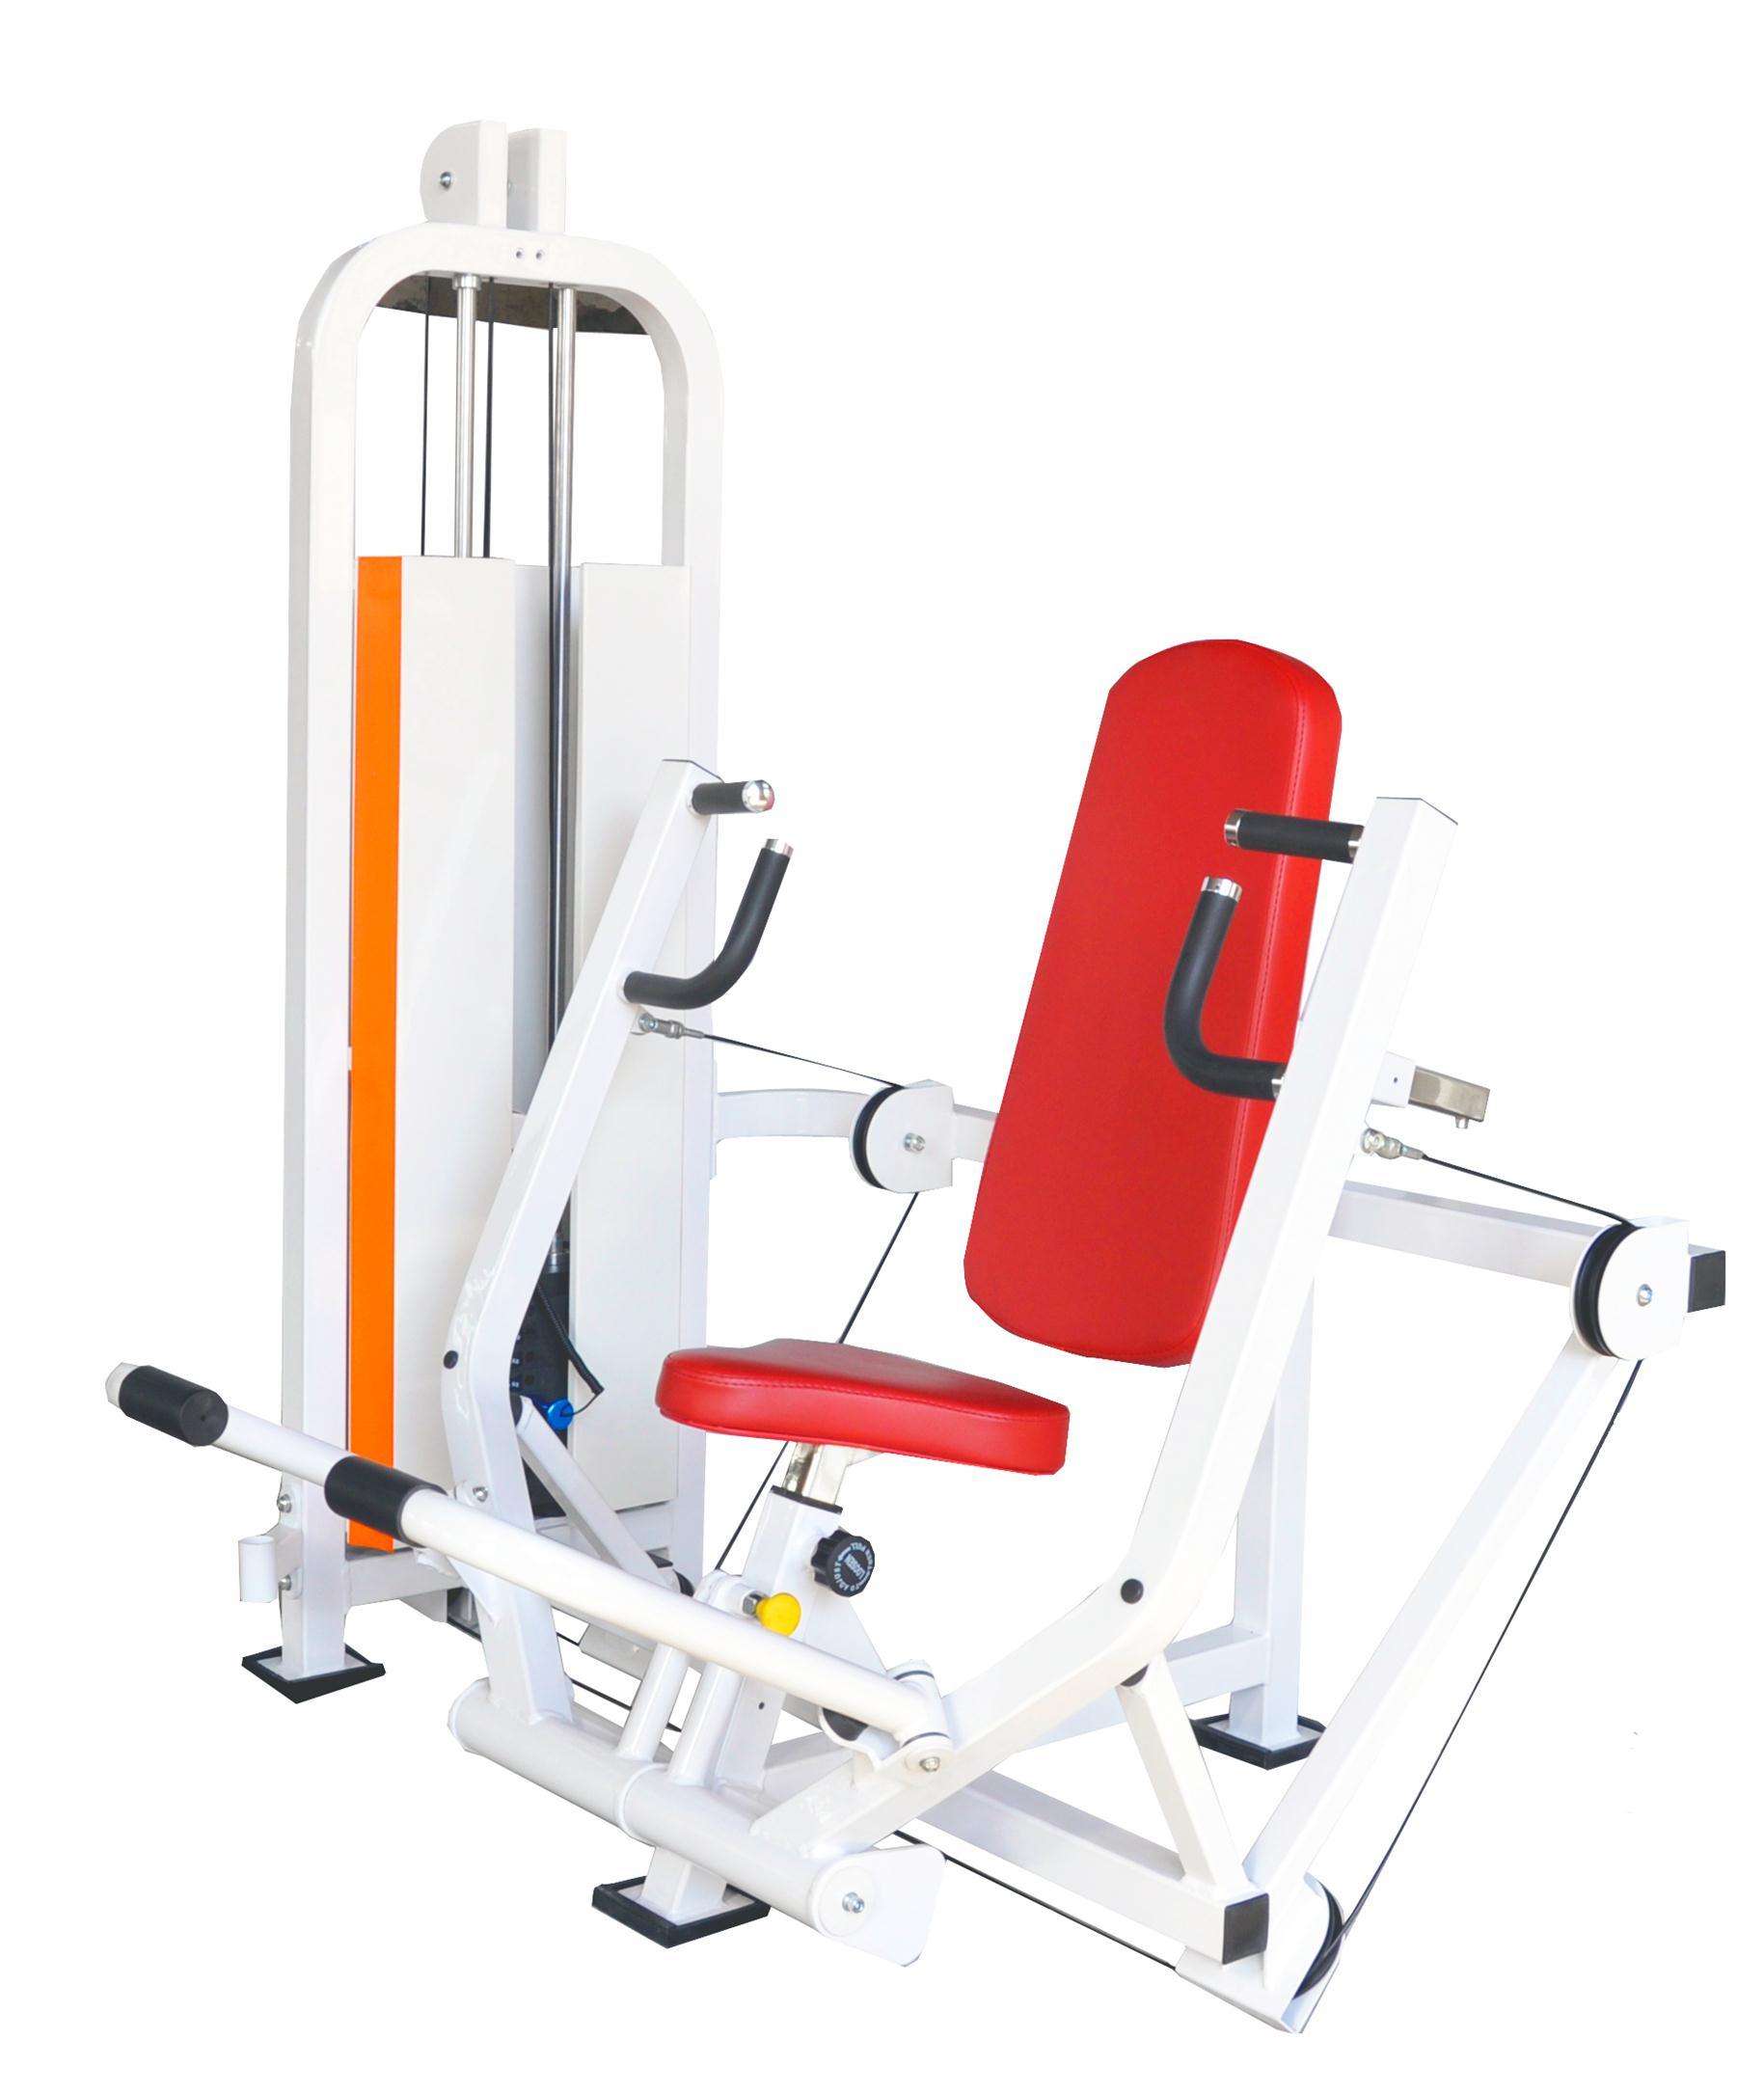 Chest Press/Fitness Equipment/Rehabilitation Equipment